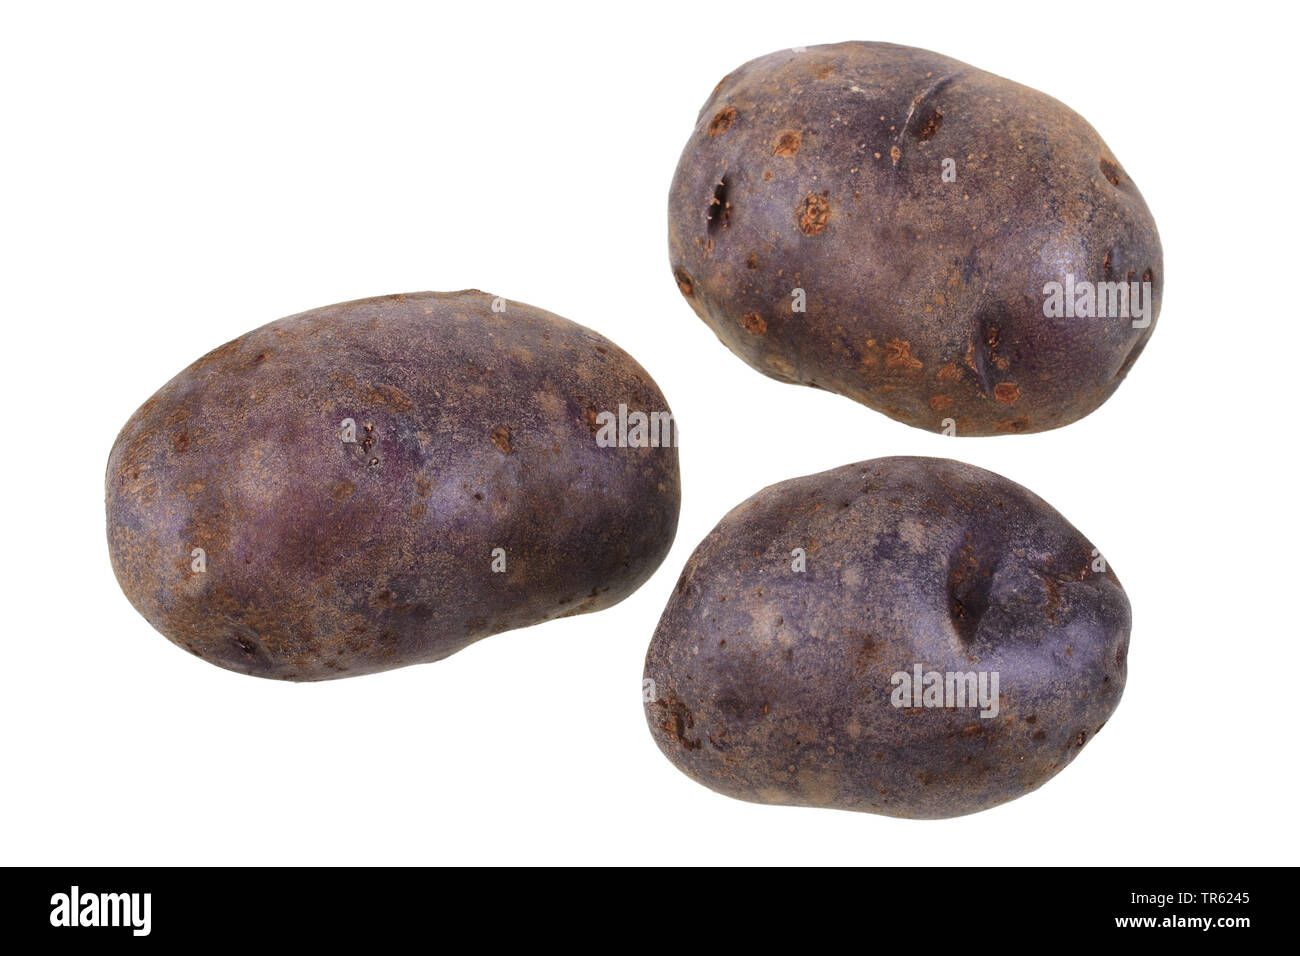 La papa (Solanum tuberosum Blauer Schwede), cultivar patatas de Blauer Schwede, cuarteado Foto de stock